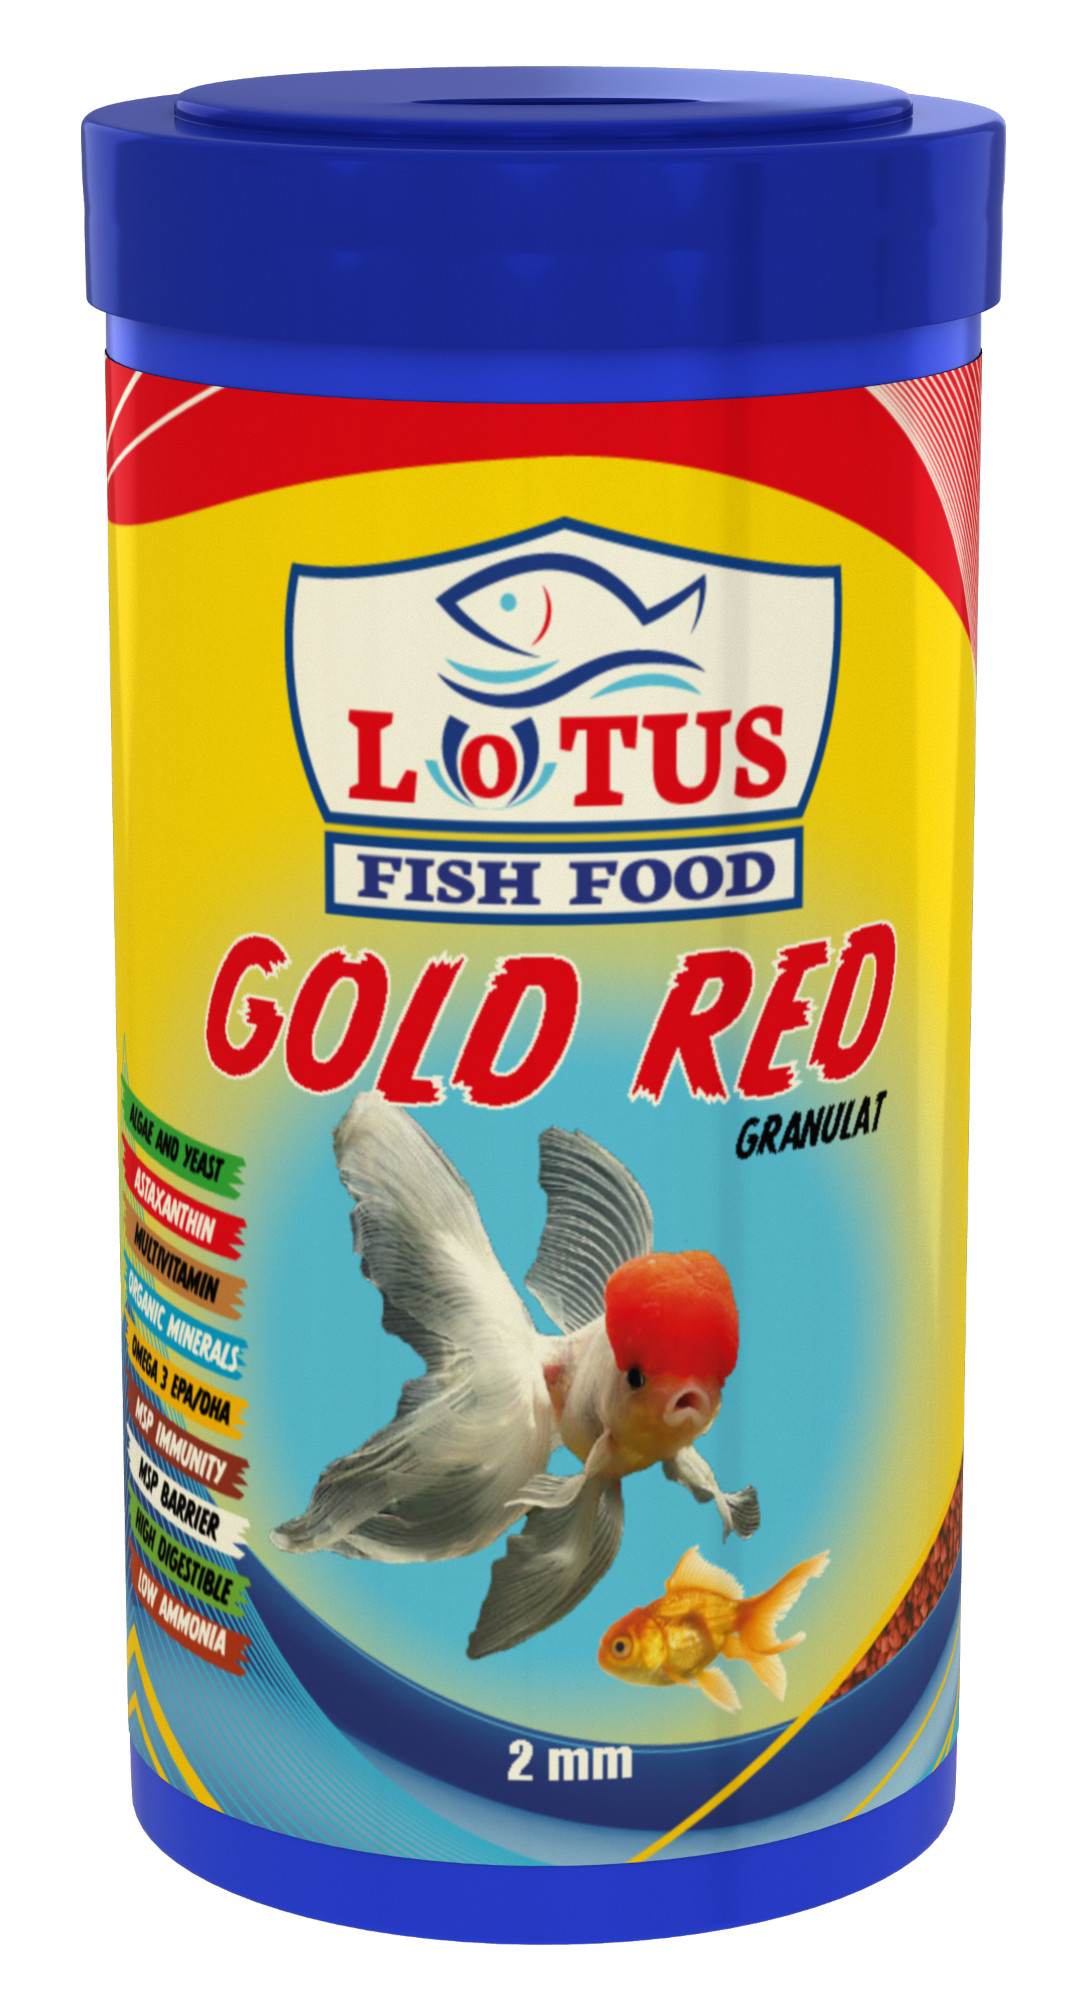 Lotus Japon Balığı Yem ve Berraklaştırıcı Seti, Lotus Gold Mix 250gr ve Red 100ml